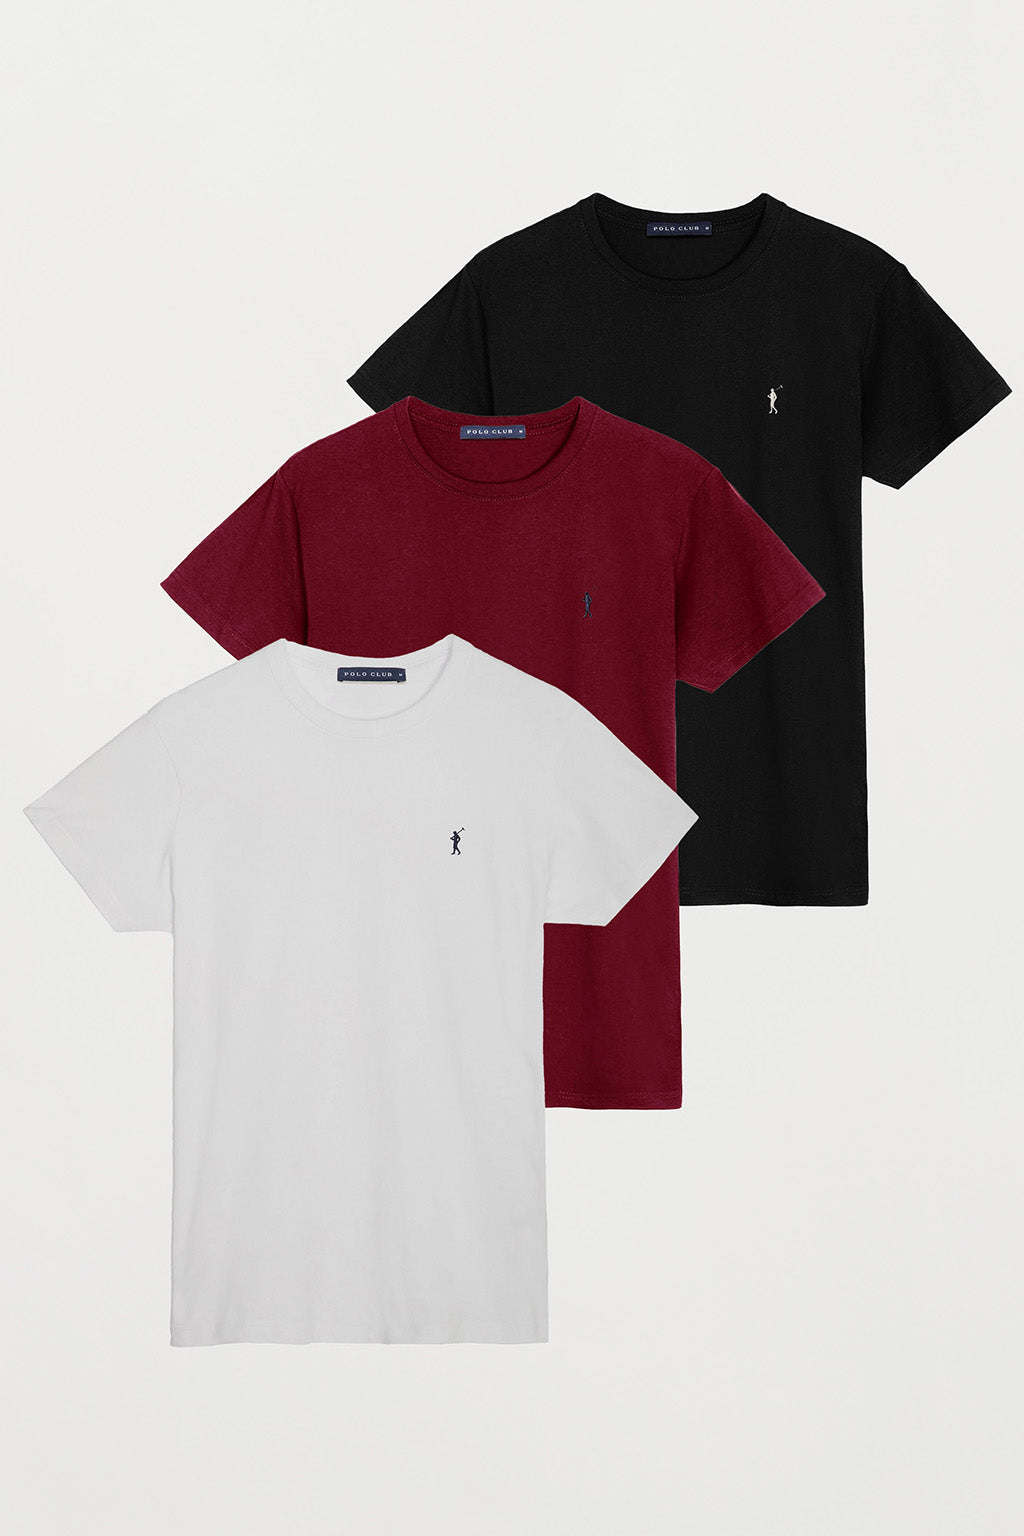 de tres camisetas negra, blanca y burdeos de cuello redondo y log – Polo Club